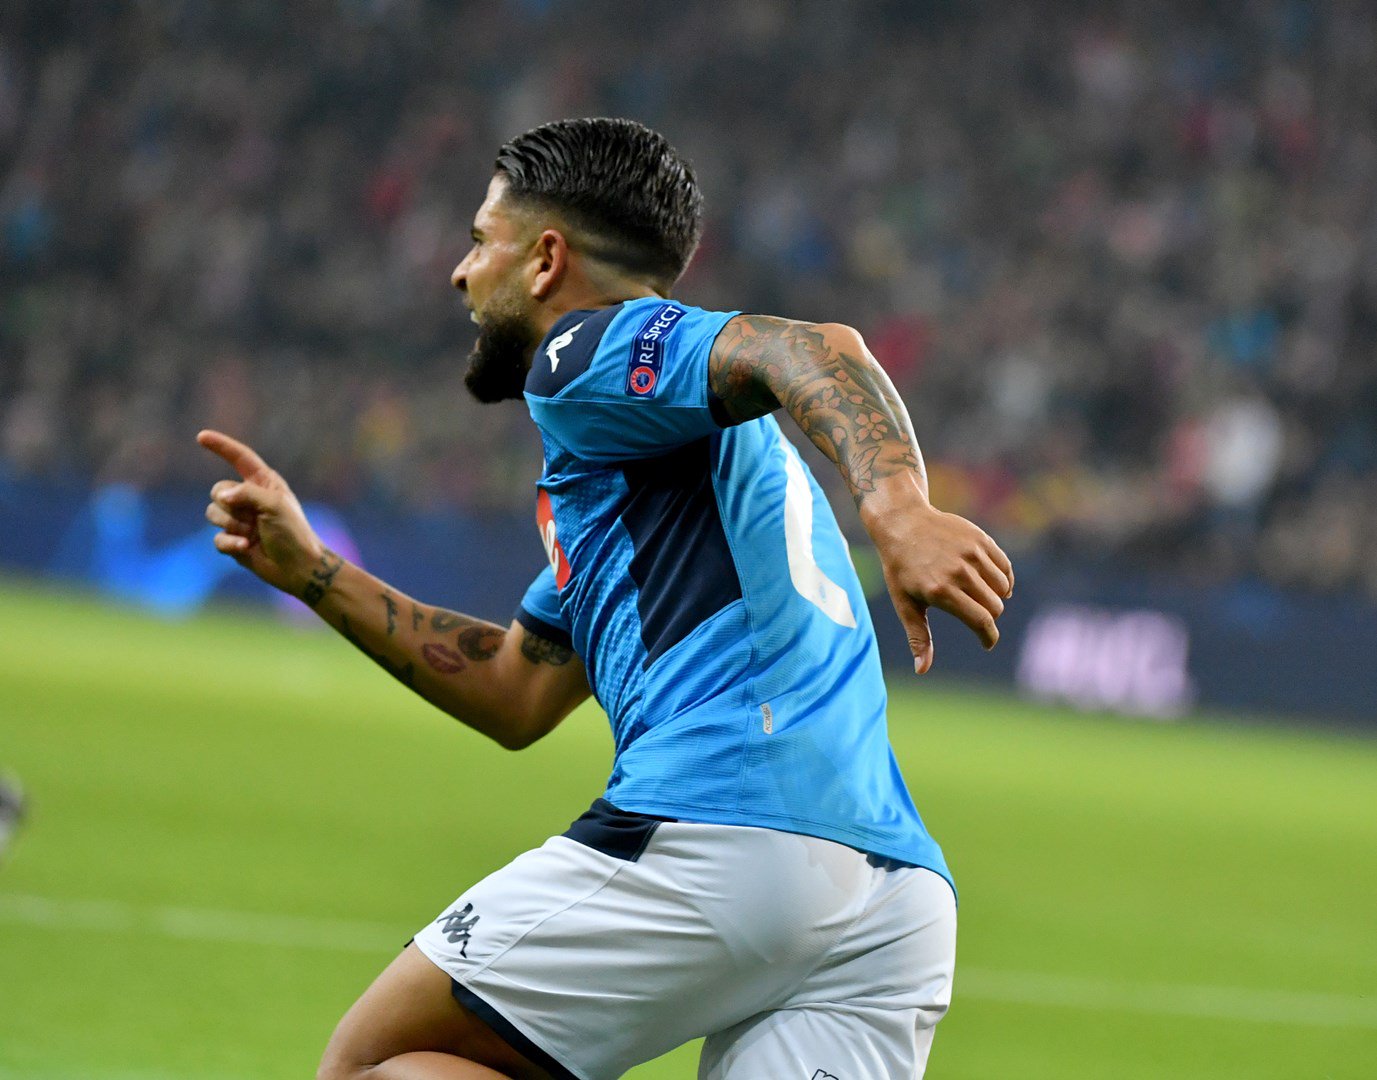 Per la prima volta il Napoli totalizza 7 punti nelle prime 3 gare di Champions